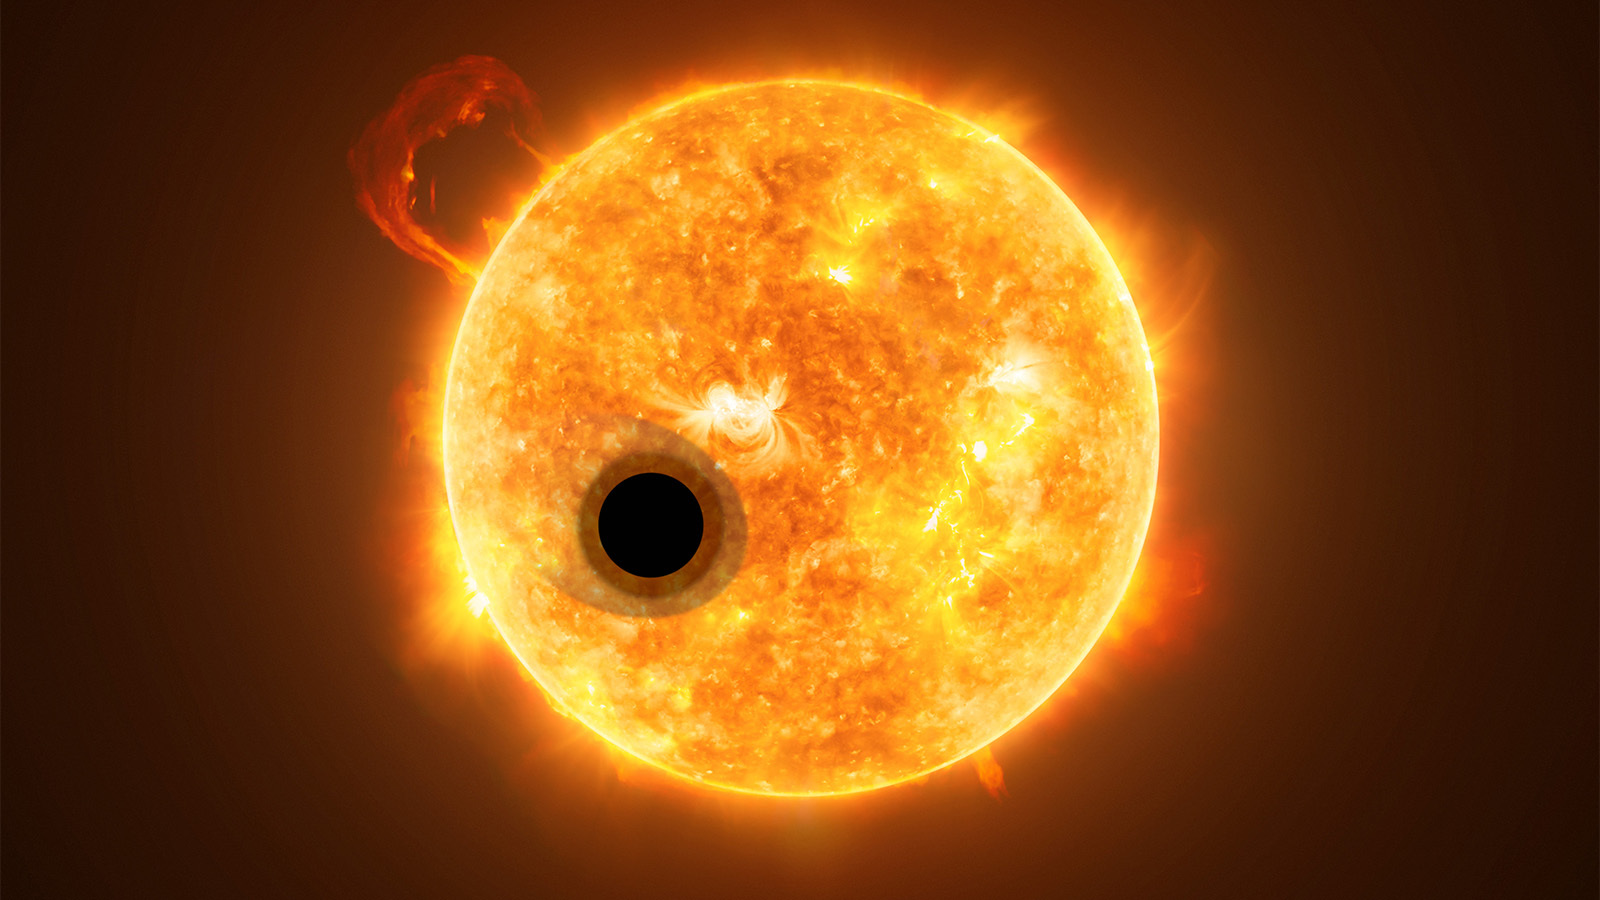 La planète WASP-107b, représentée ici devant son étoile bien plus dense, a la masse d'une Neptune dans le volume de Jupiter. ESA/Hubble/NASA/M. Kornmesser